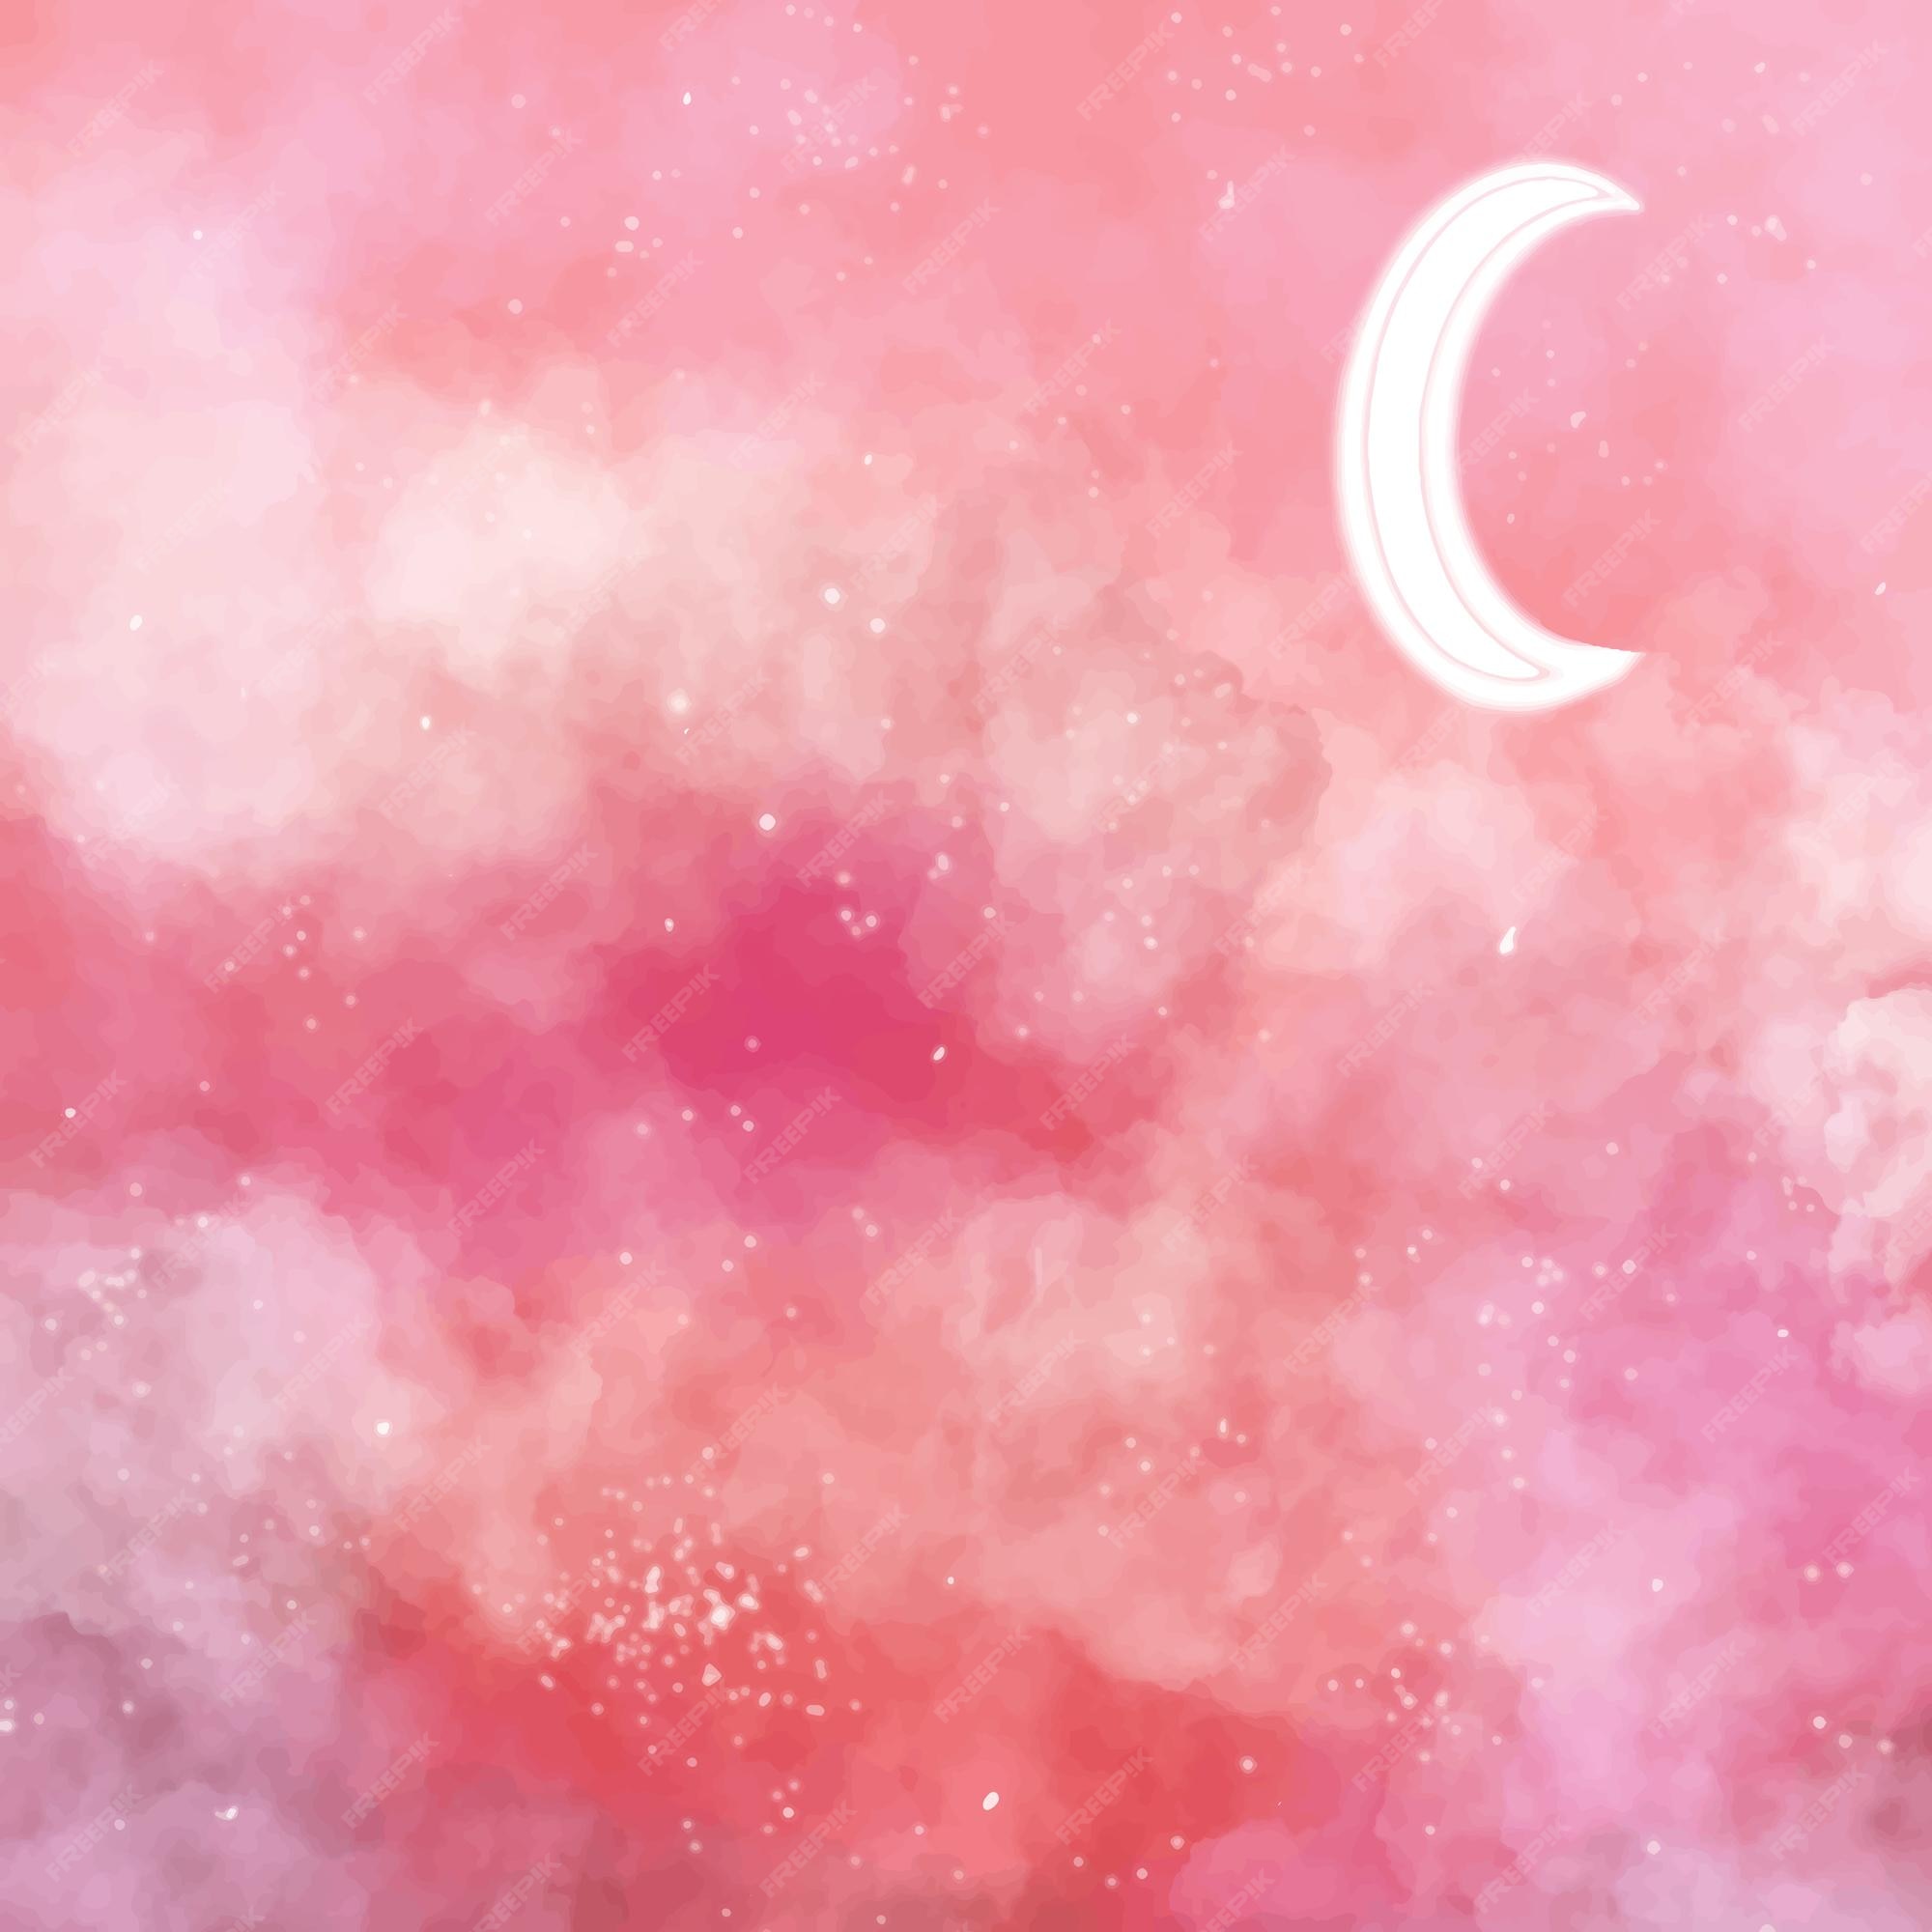 Với hình nền mặt trăng hồng đẹp mê hồn này, bạn sẽ có một trải nghiệm xem đẳng cấp trên điện thoại của mình. Màu hồng tinh tế và ánh sáng từ mặt trăng kết hợp tạo nên một bầu trời đầy sao lấp lánh. Cảm giác thư giãn và tĩnh lặng chắc chắn sẽ đến với bạn khi sử dụng hình nền này.